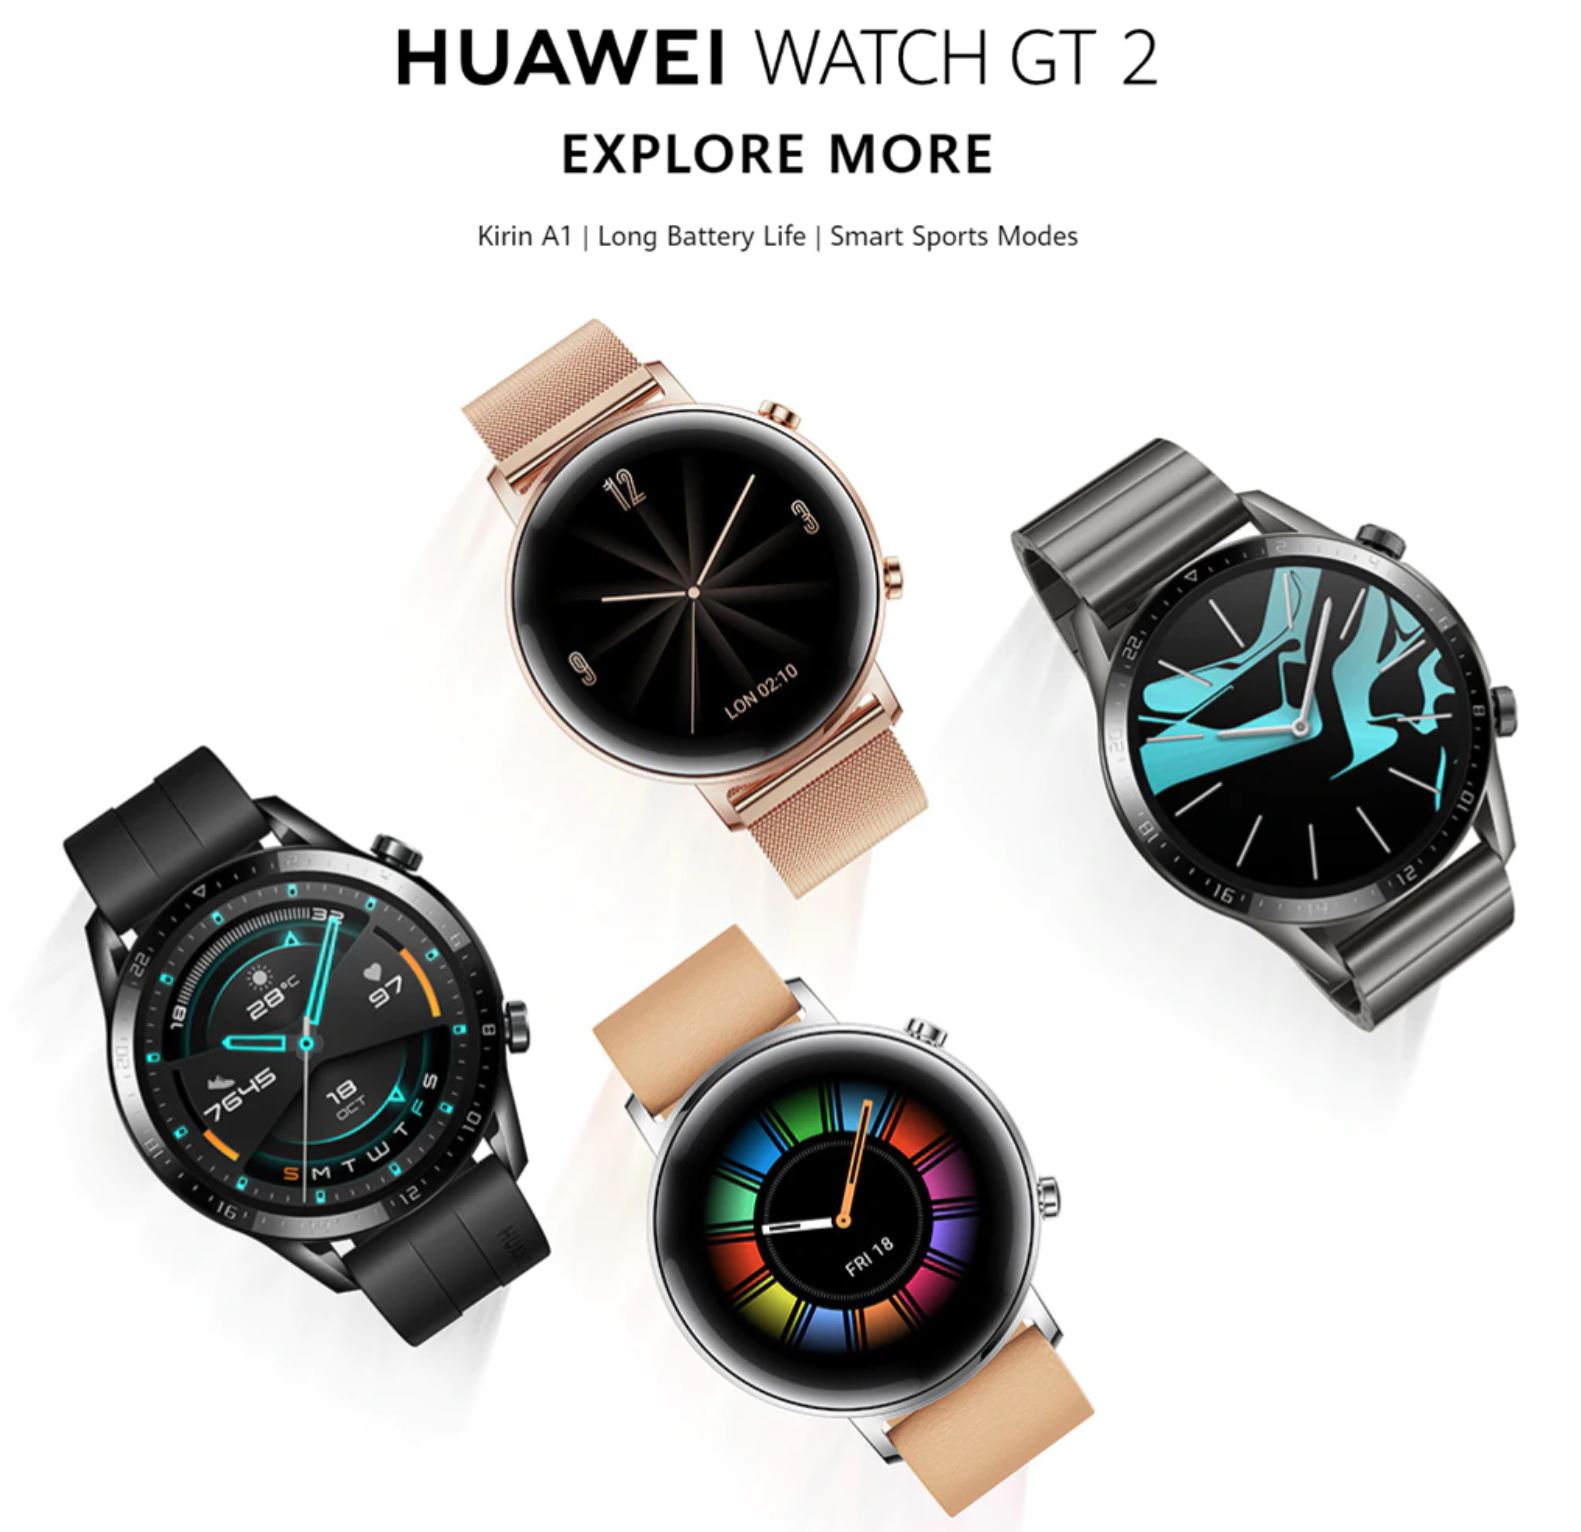 Smartwatche z Aliexpress - bogata oferta w rewelacyjnie niskich cenach - Huawei Watch GT 2